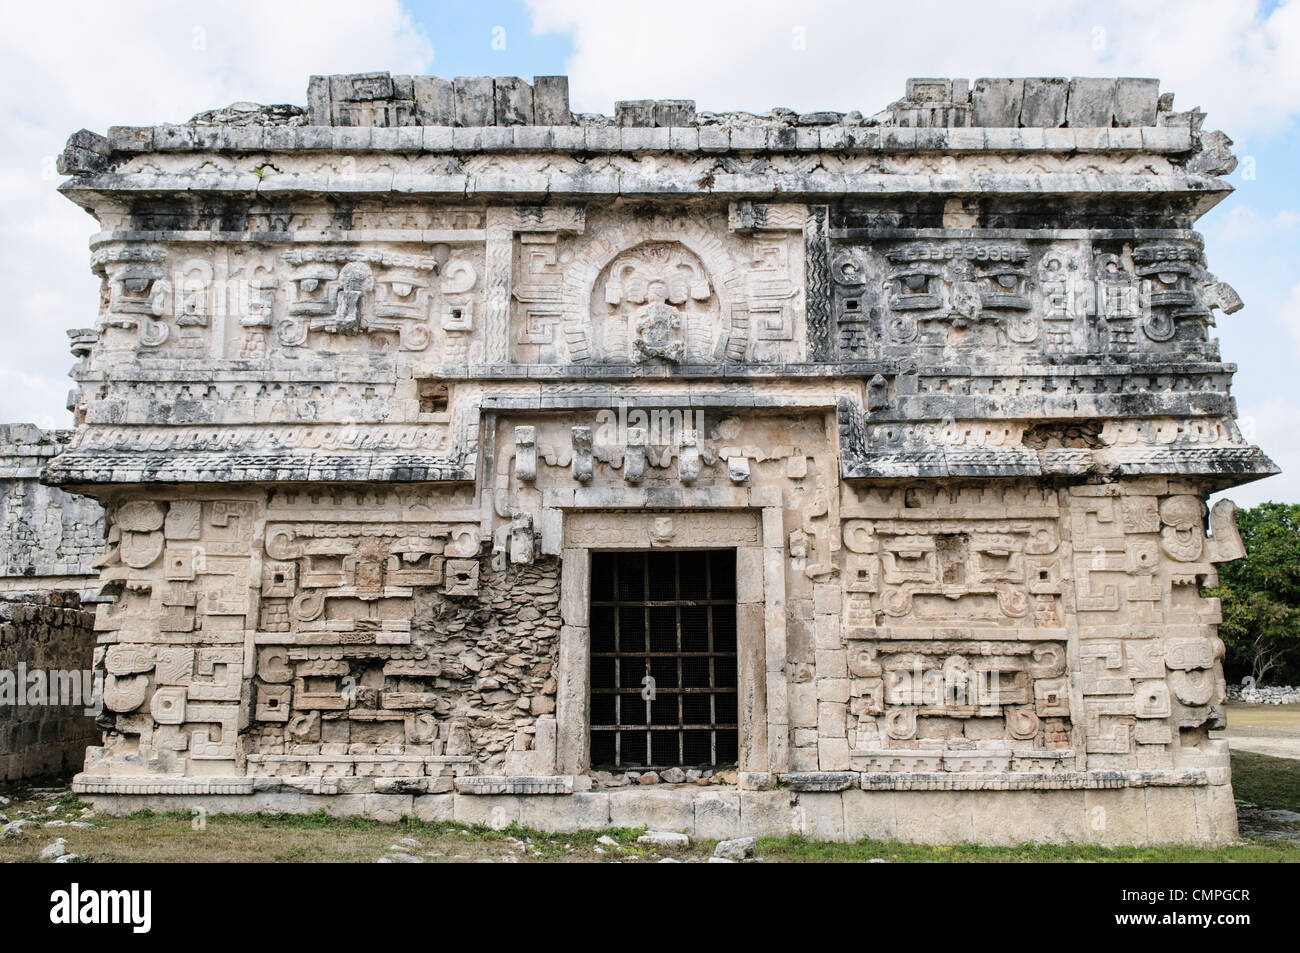 CHICHEN ITZA, Mexique - finement décorées bâtiments à Chichen Itza, un site archéologique précolombien au Yucatan, Mexique. Cet édifice est connu comme 'La Iglesia' et est dans le quartier de Las Monjas complexe de bâtiments. Banque D'Images